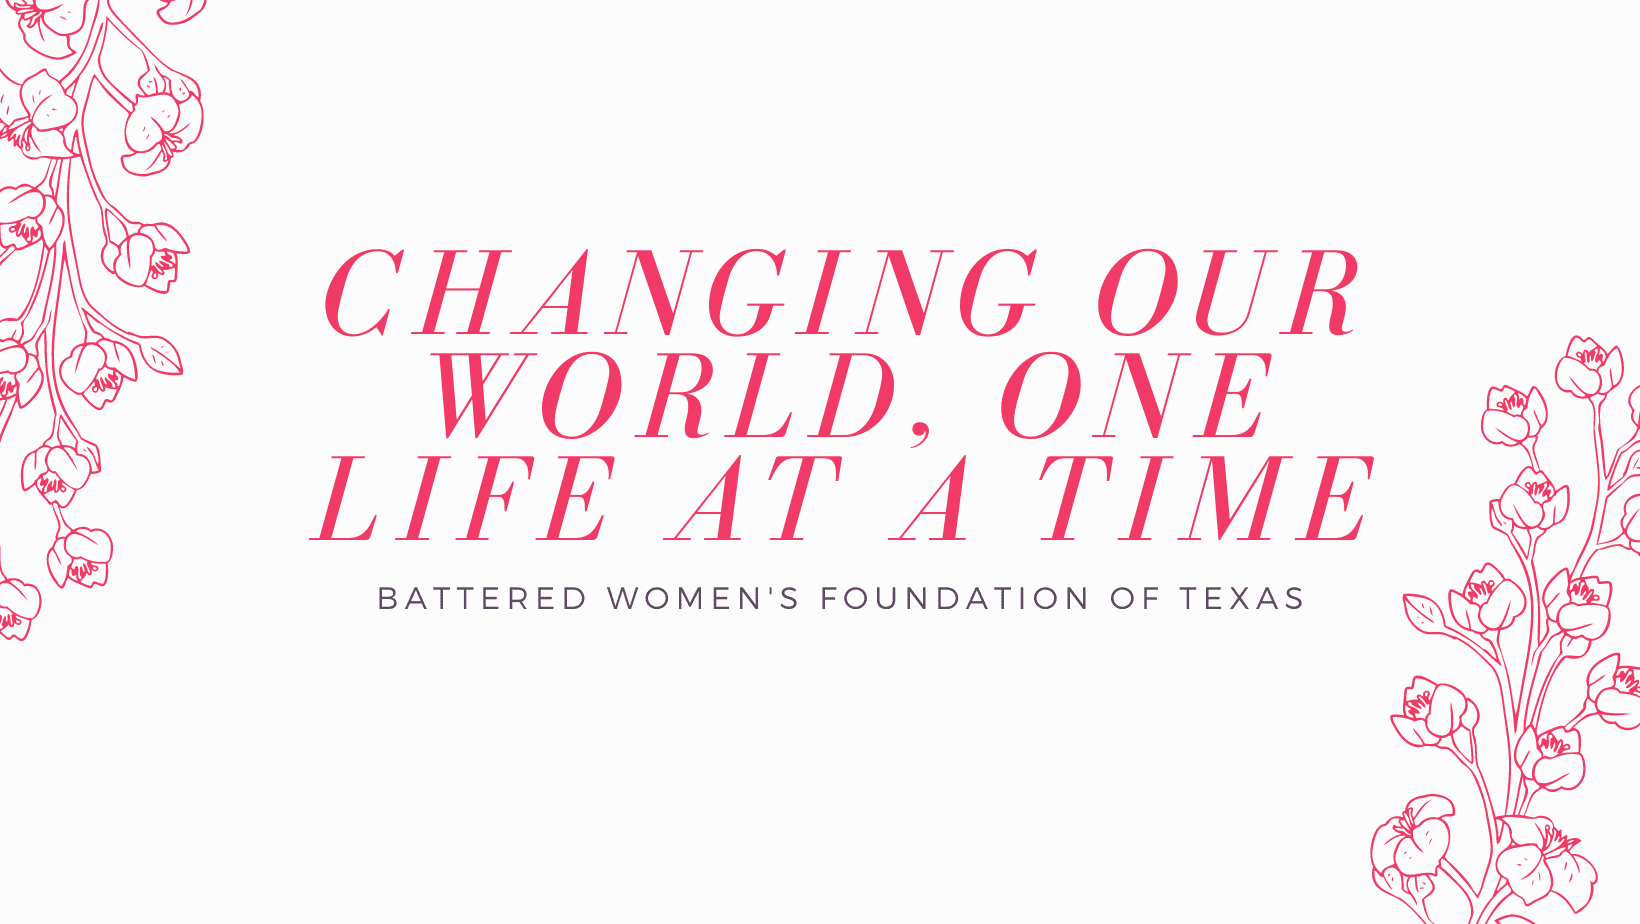 Battered women's foundation